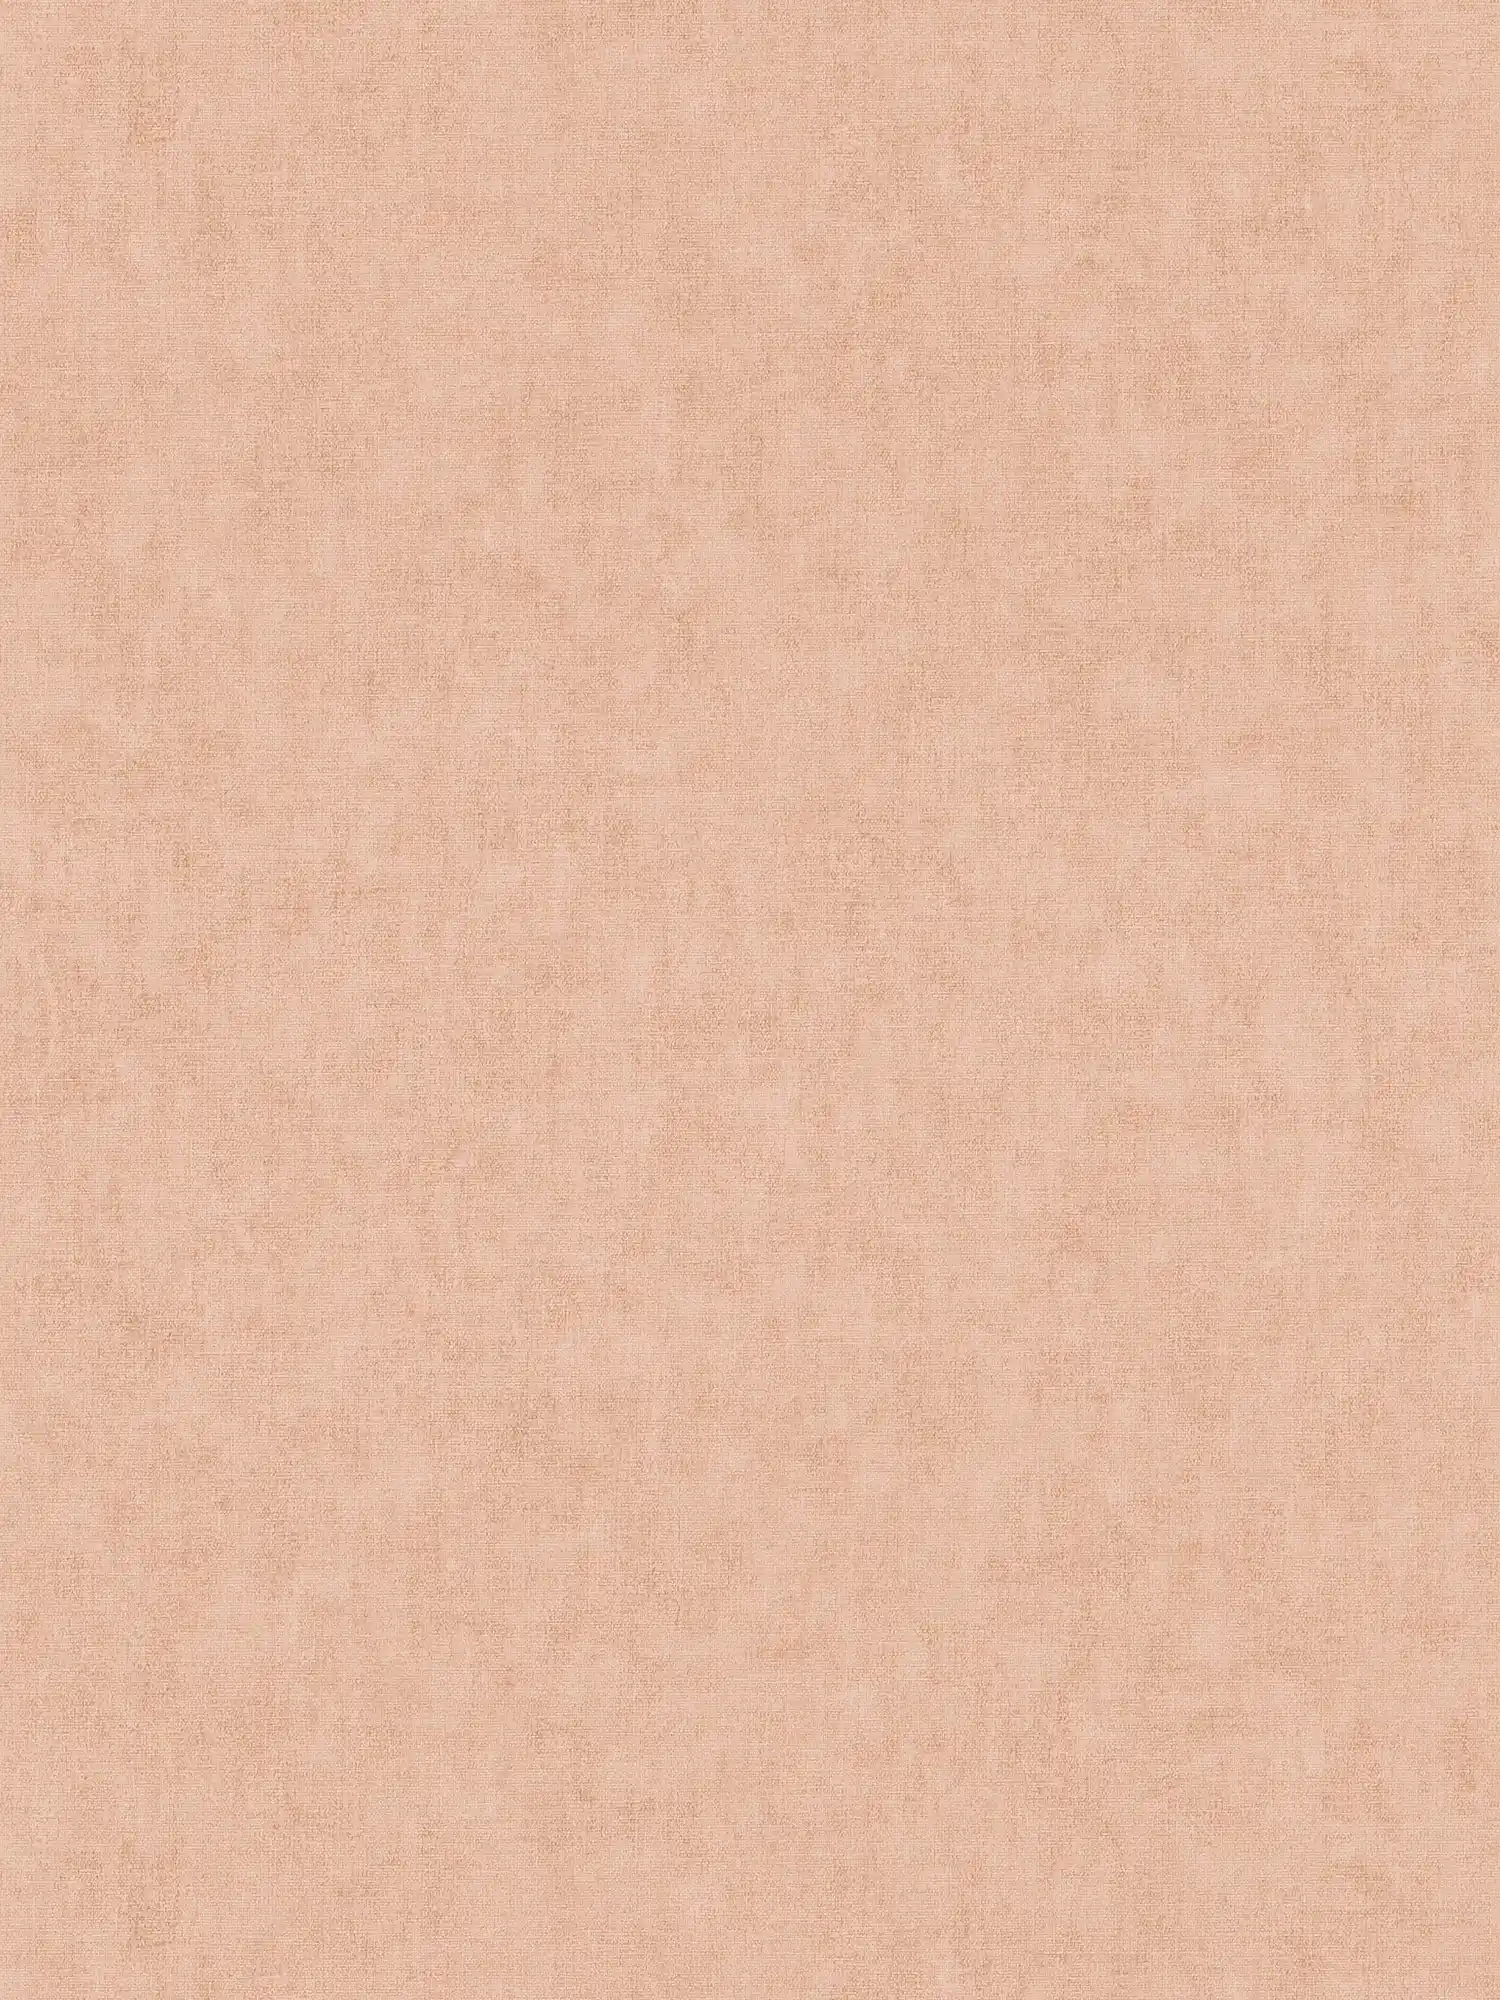 Behang effen, linnenlook & Scandinavische stijl - roze, oranje
